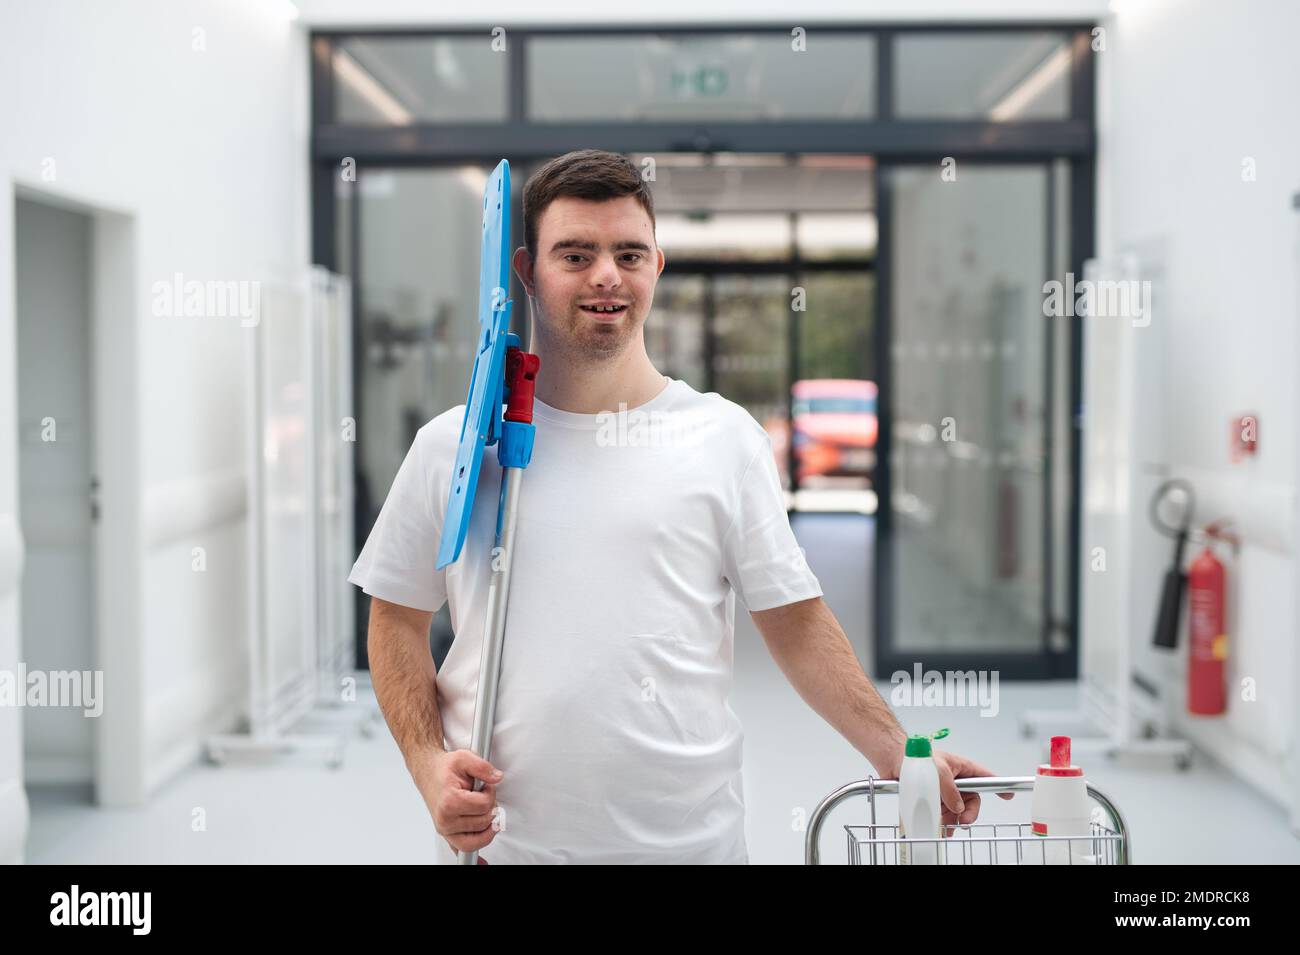 Giovane uomo con sindrome di Down che lavora in un ospedale come più pulito. Concetto di integrazione di persone con disabilità nella società. Foto Stock